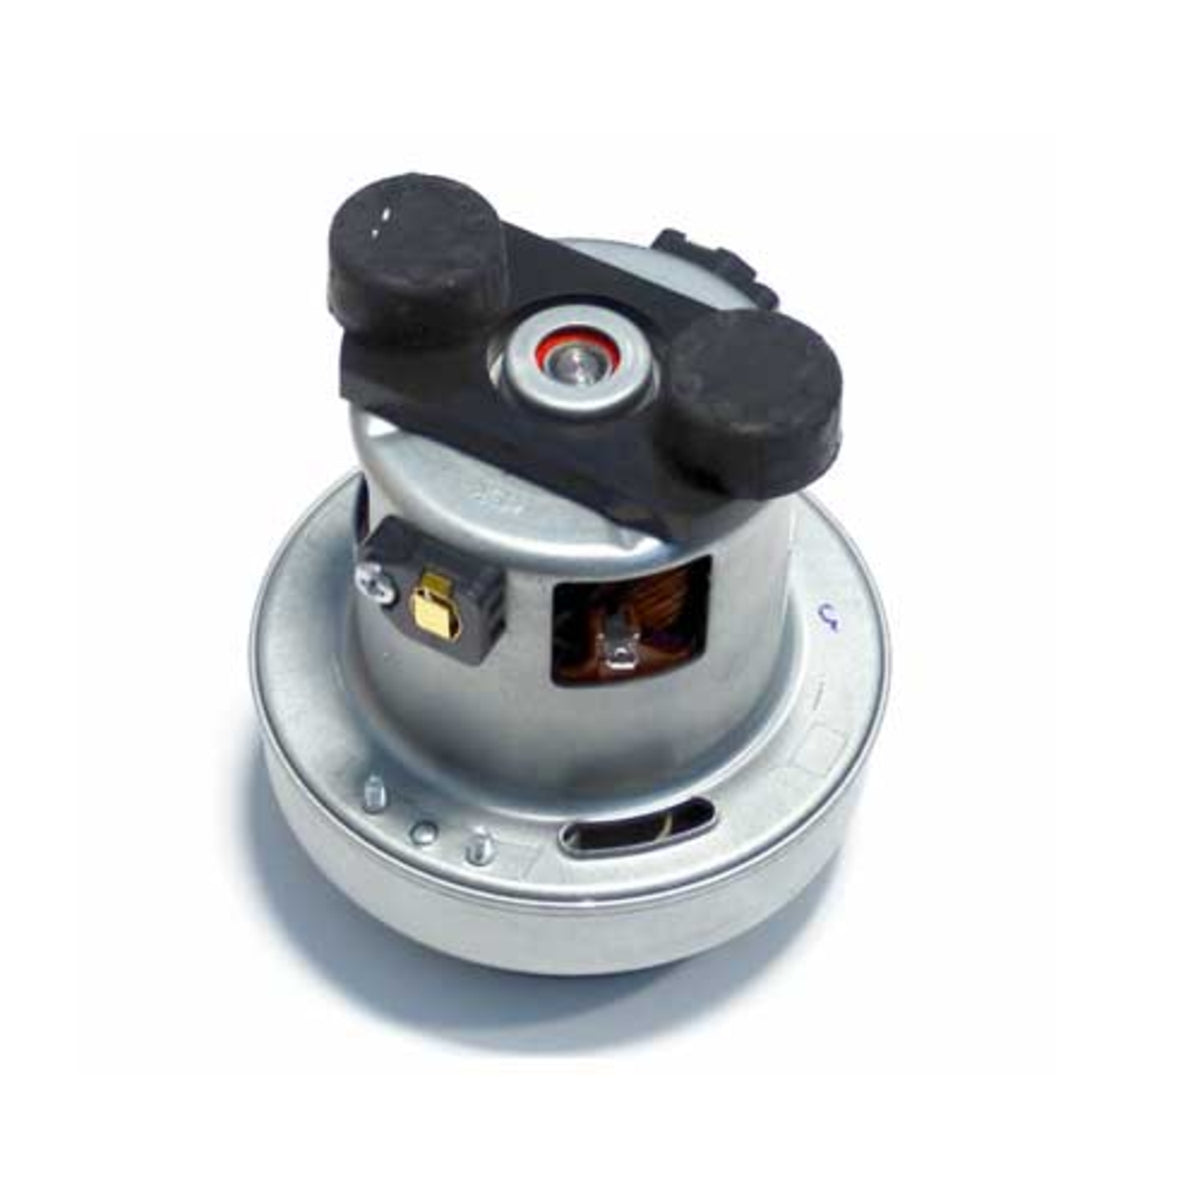 2/4 filtros circulares para aspiradora Rowenta Compact Power  Cyclonic-RS-RT900574 (paquete de 2)